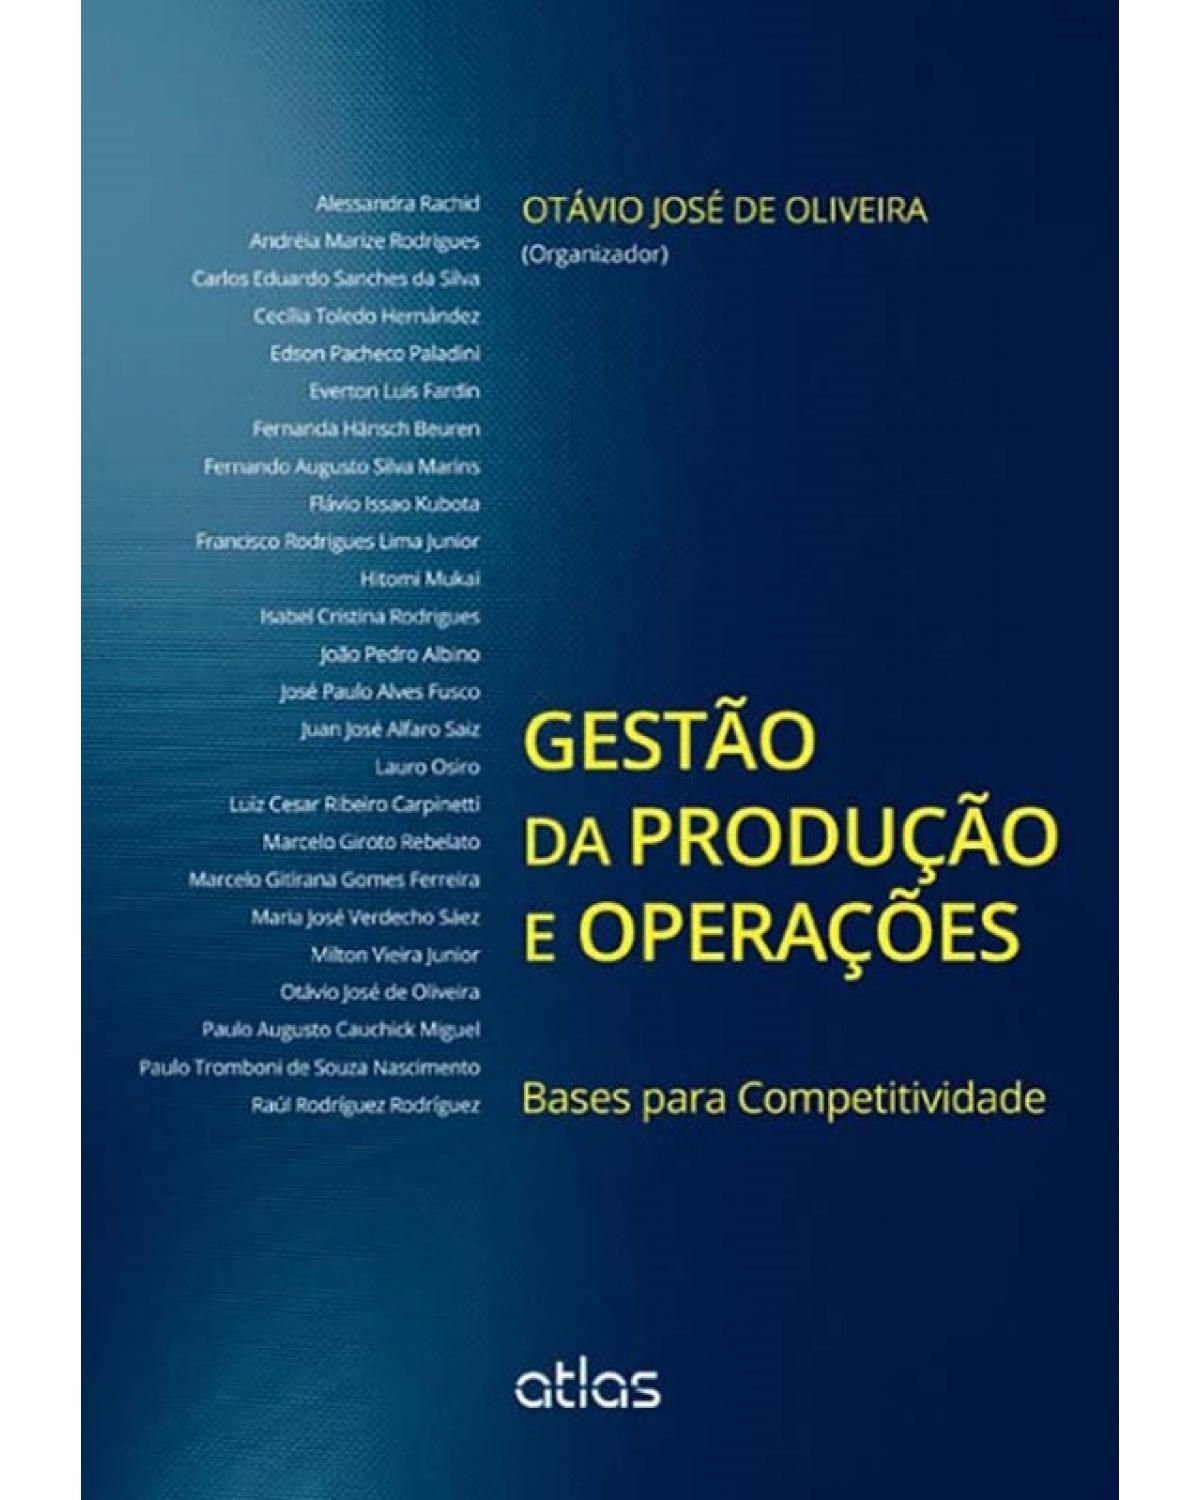 Gestão da produção e operações - Bases para competitividade - 1ª Edição | 2014